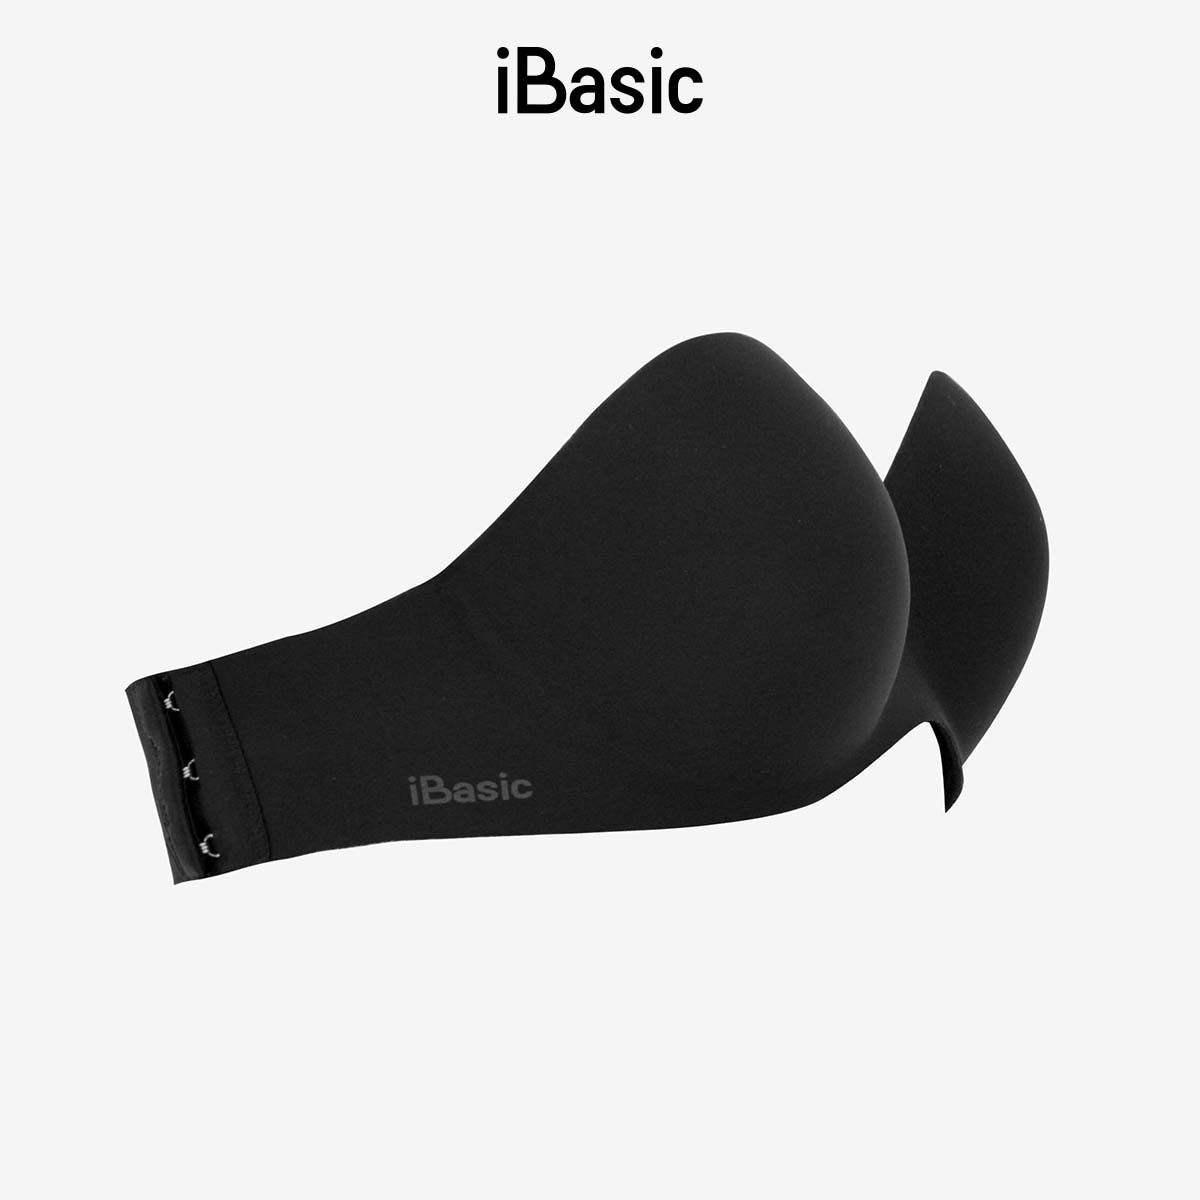 Áo ngực nữ cup ngang có gọng không dây kèm phụ kiện dây trong iBasic PK069